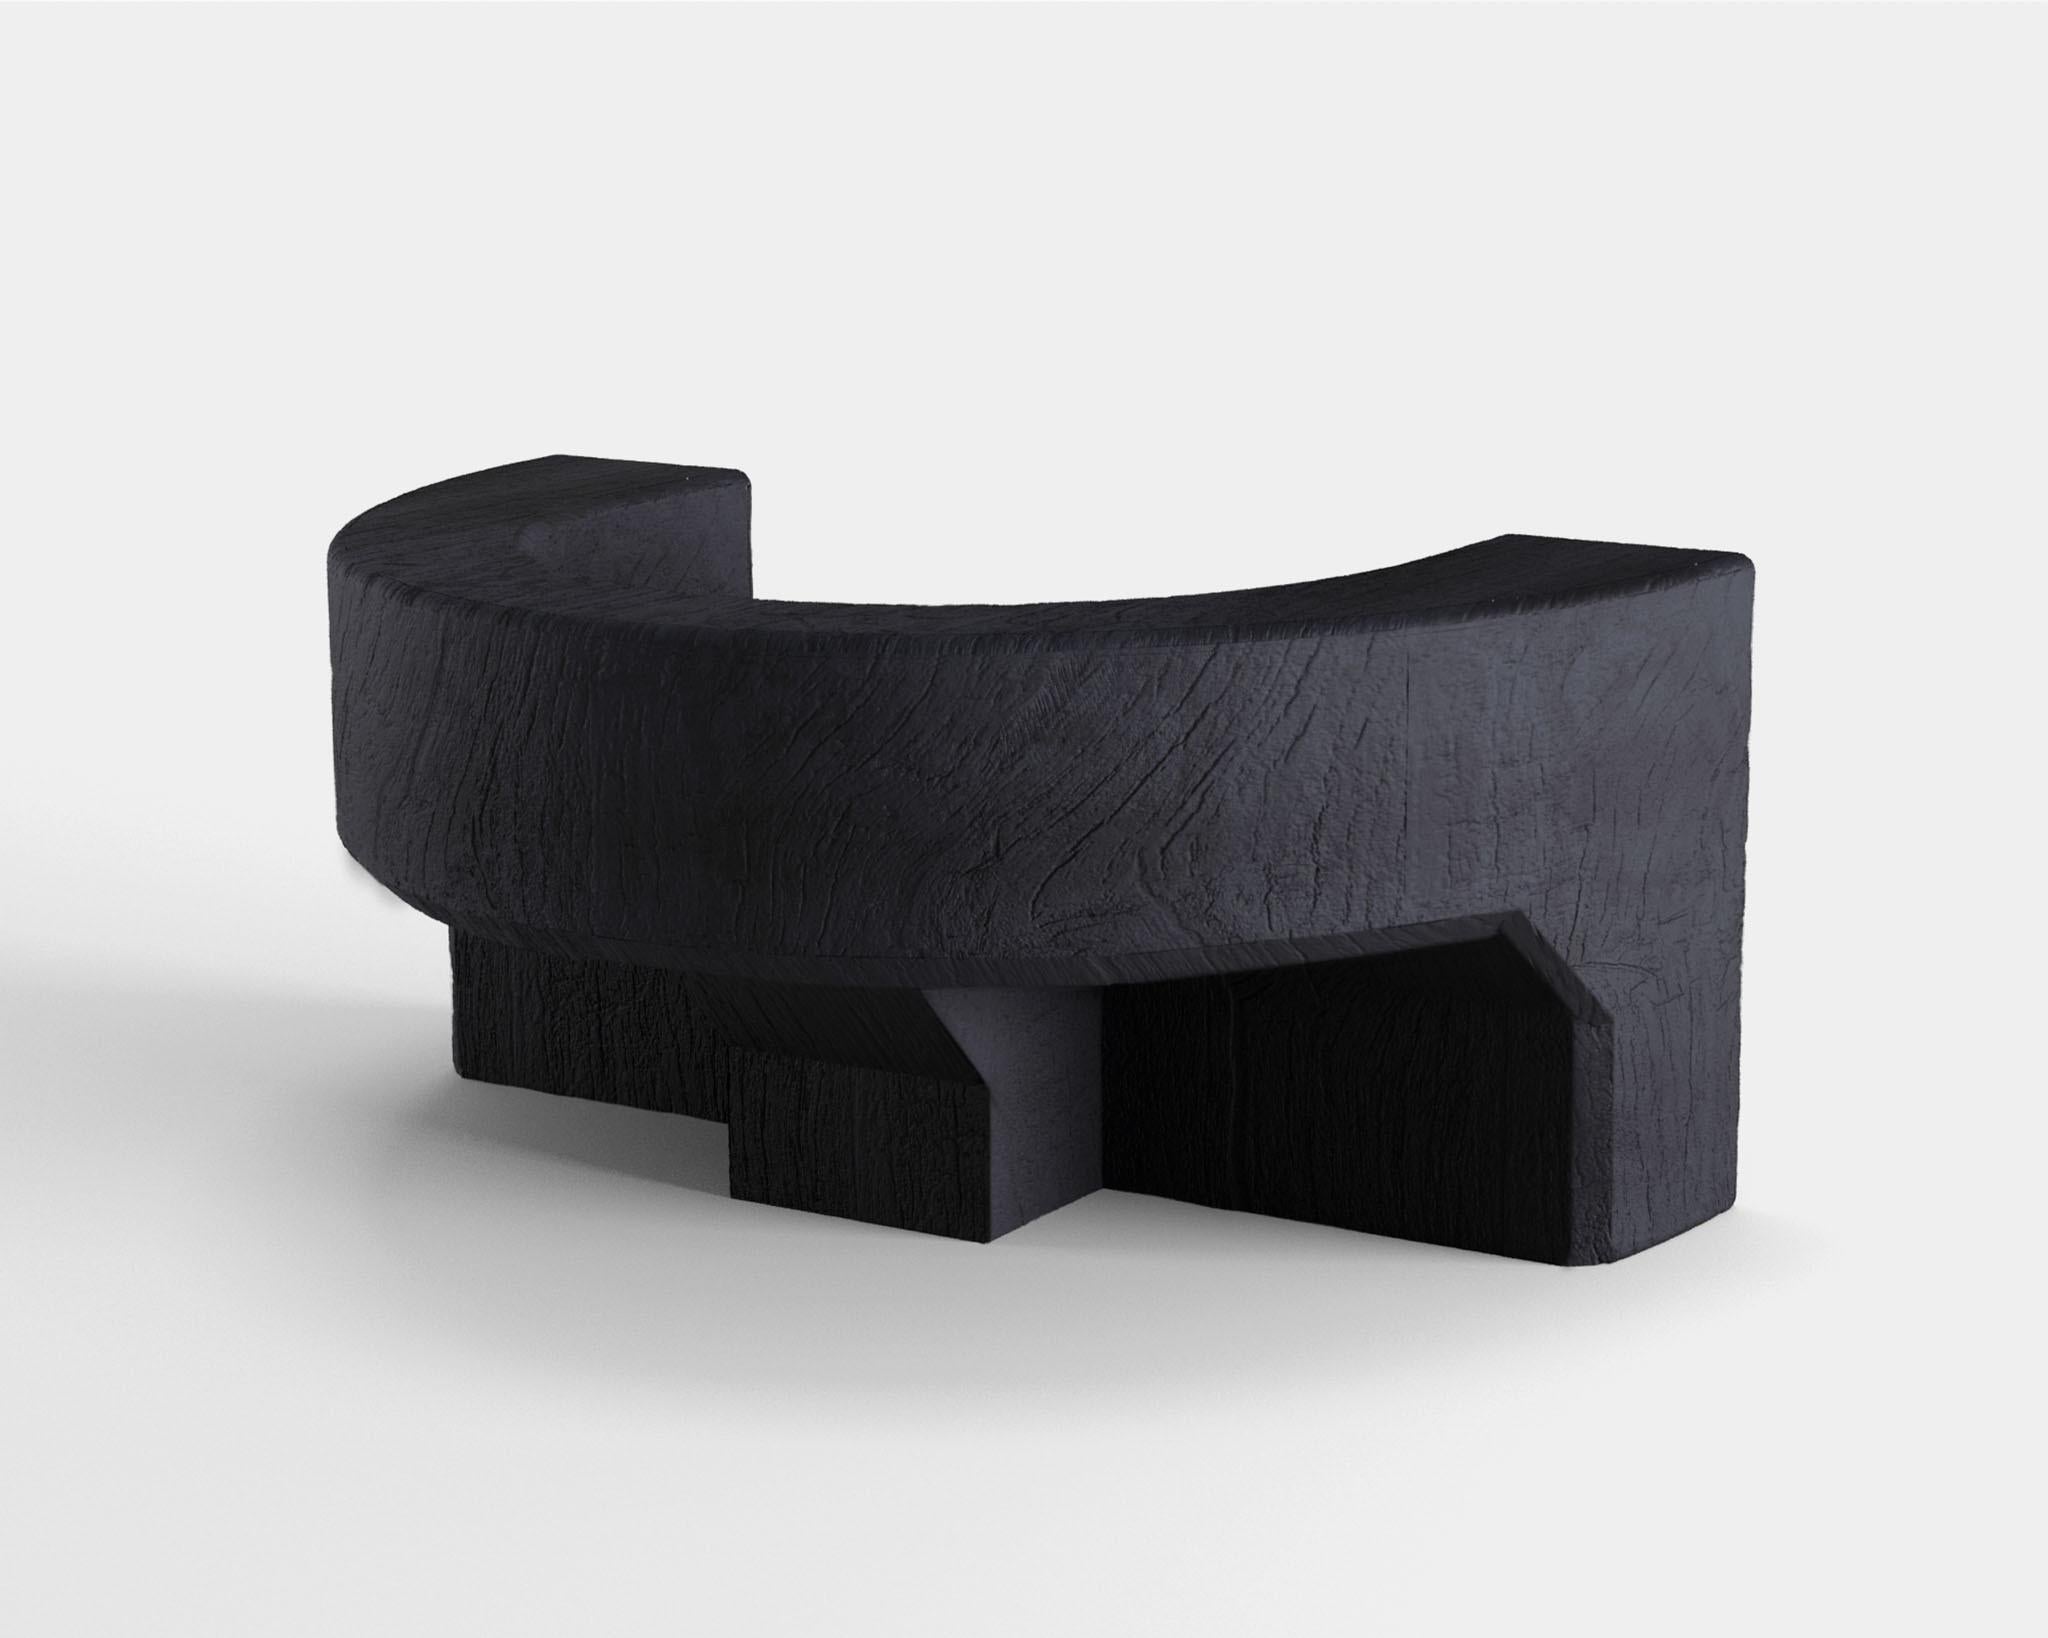 Anpassbarer Sessel Maco von Camilo Andres Rodriguez Marquez (alias CarmWorks)

Massive Eiche oder Zedernholz / Gebranntes Holz oder naturbelassen 
Standardgröße: H 56 x 80 x 50 cm (anpassbar) 

Jedes Stück ist eine Einzelanfertigung und wird von der